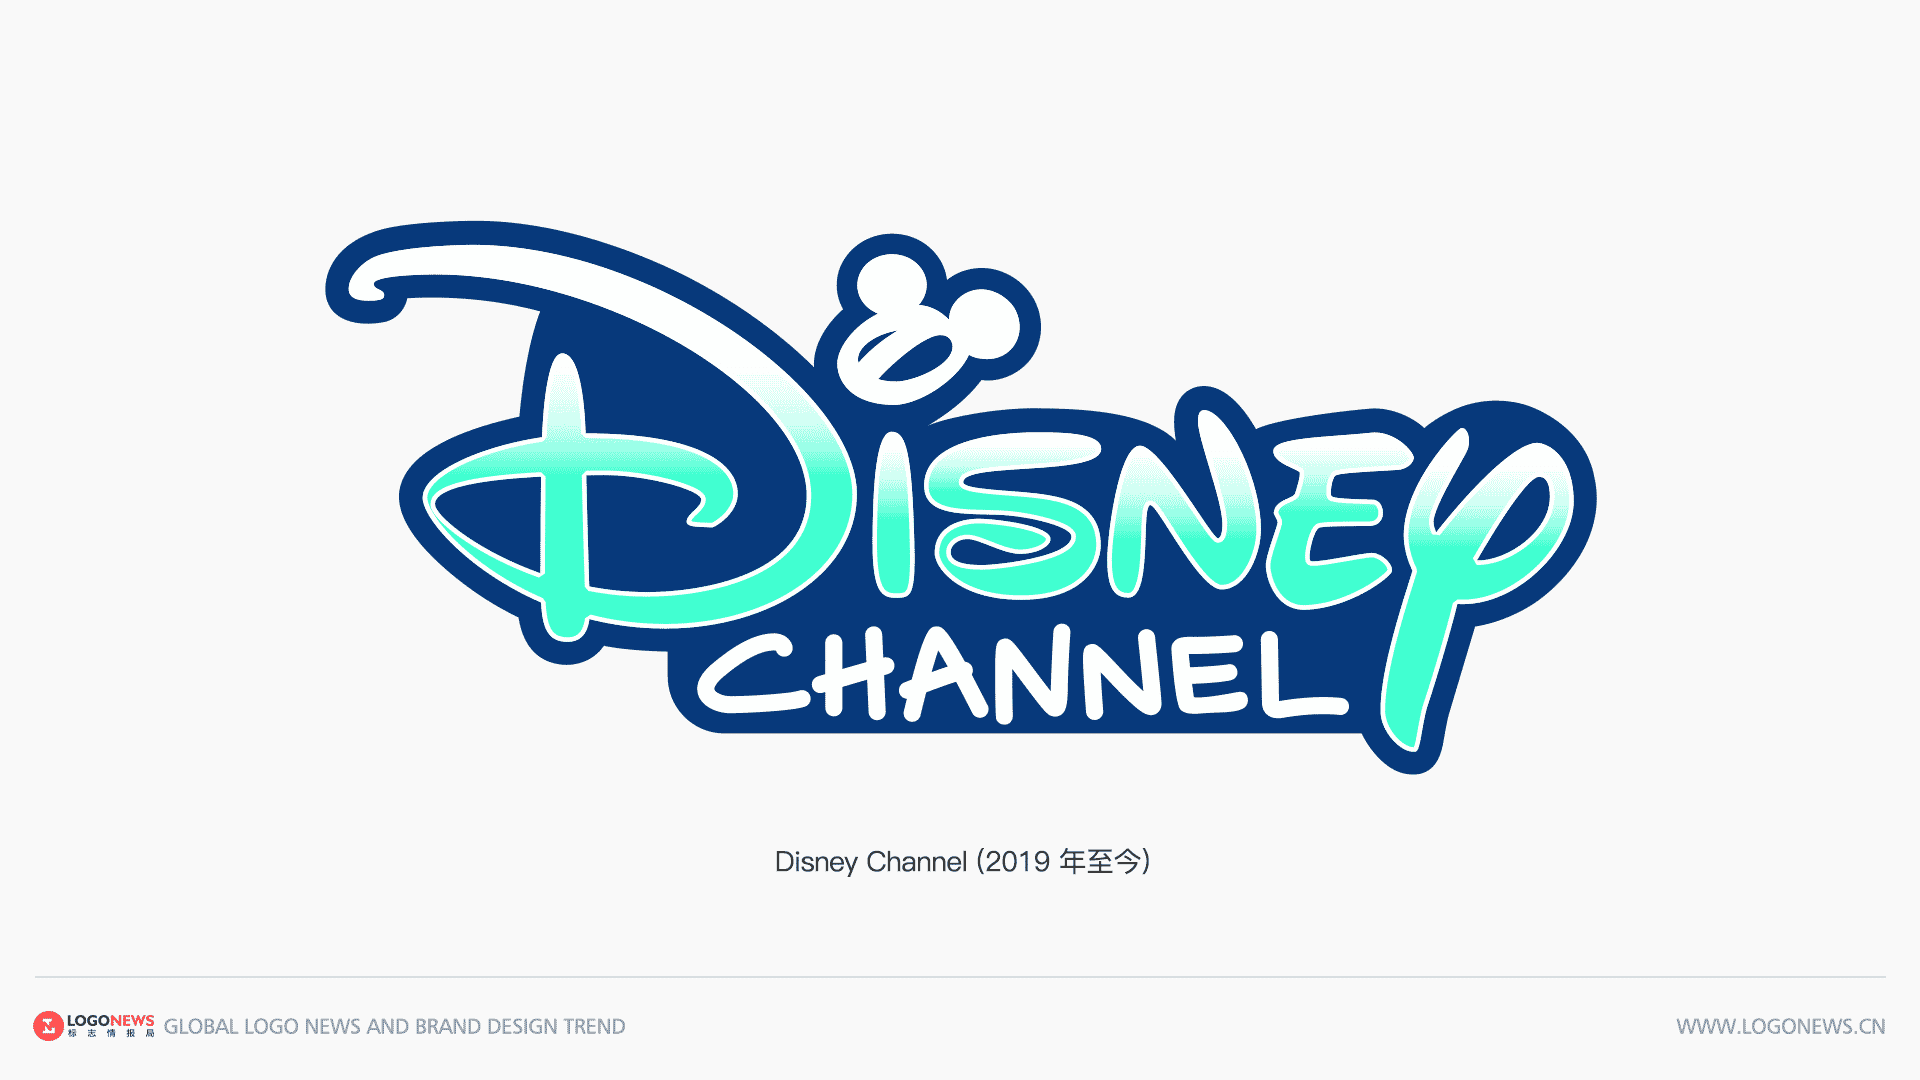 迪士尼頻道Disney Channel 更新LOGO，移除米老鼠大耳朵輪廓 7